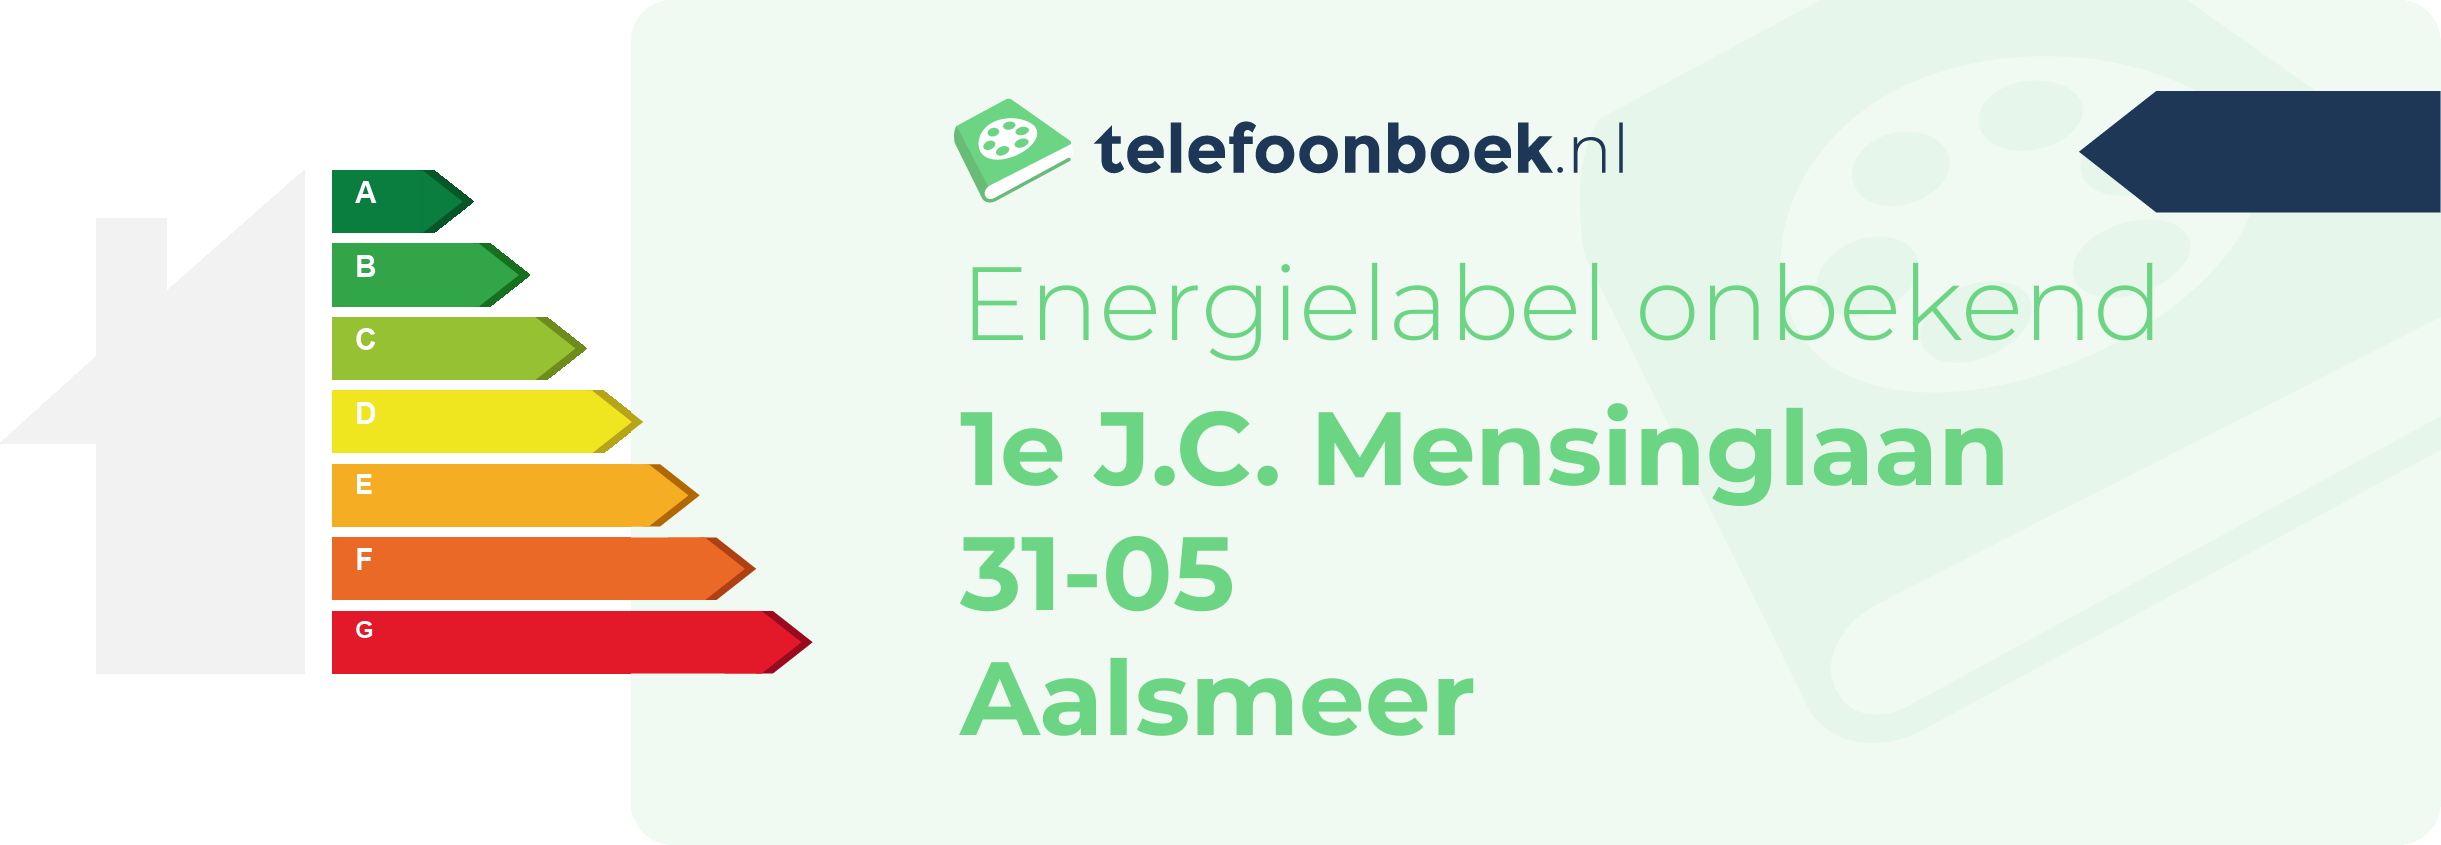 Energielabel 1e J.C. Mensinglaan 31-05 Aalsmeer